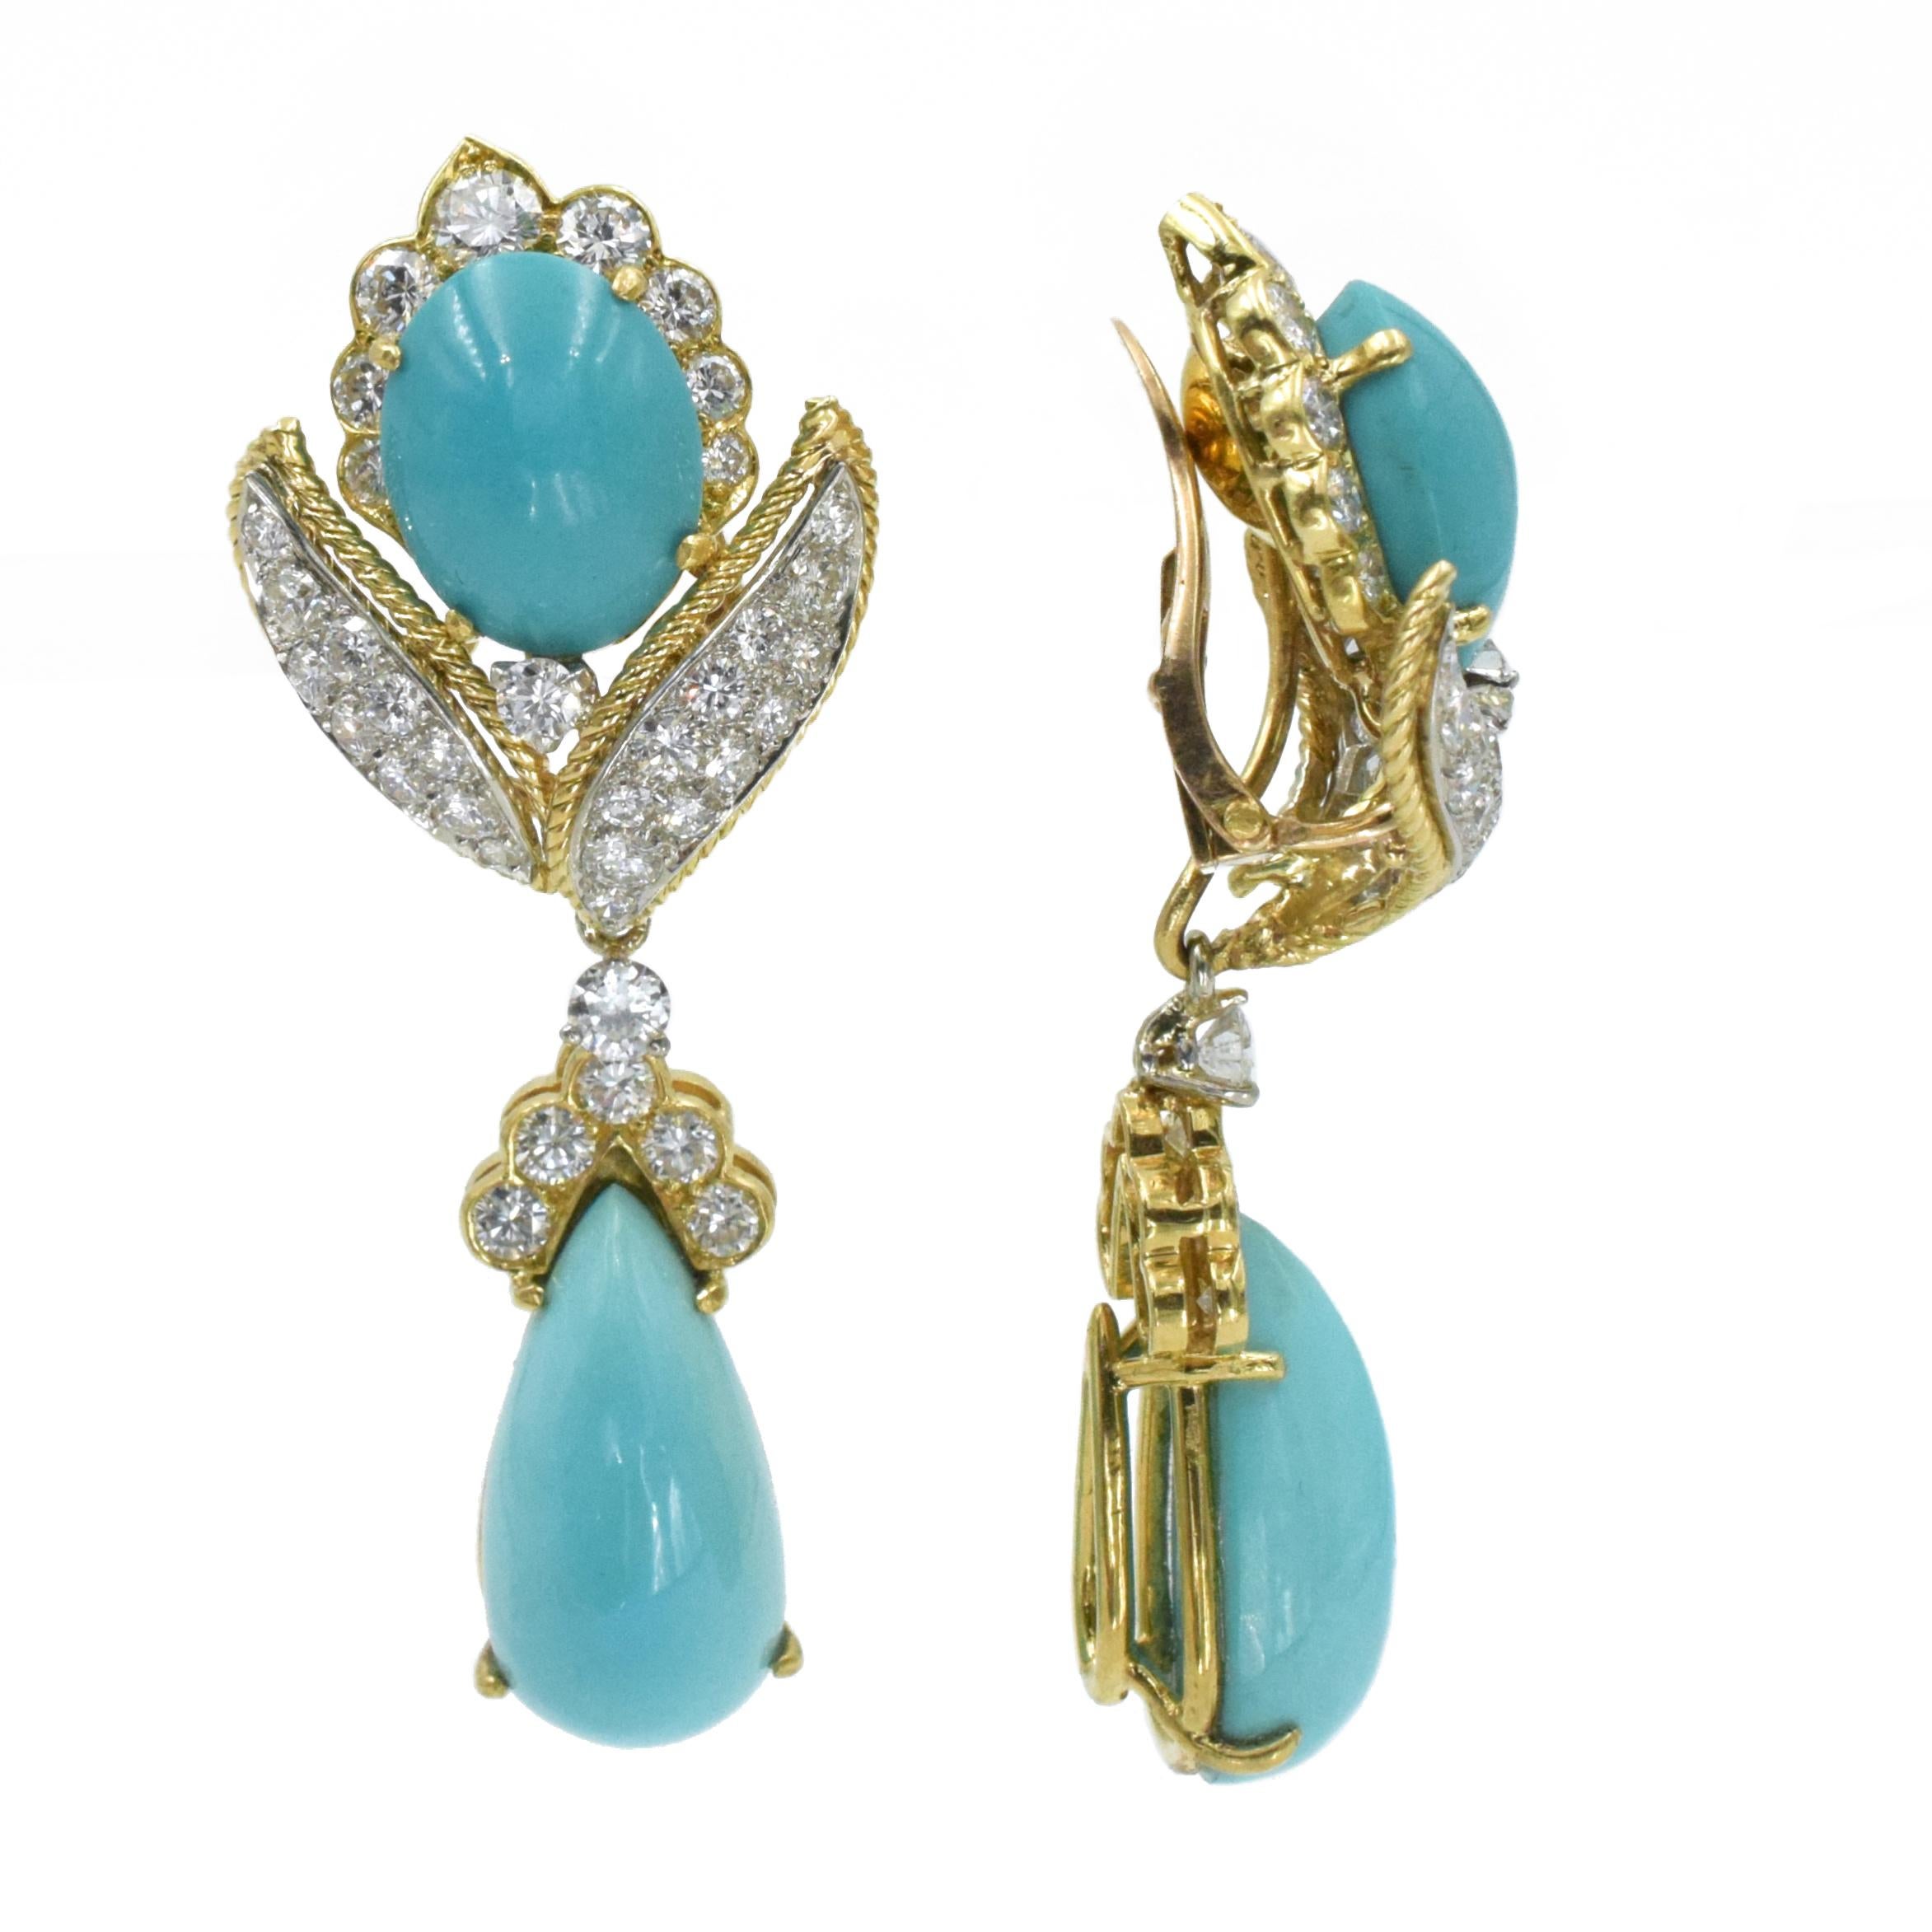 Artist Vintage Van Cleef & Arpels Turquoise and Diamond Earrings